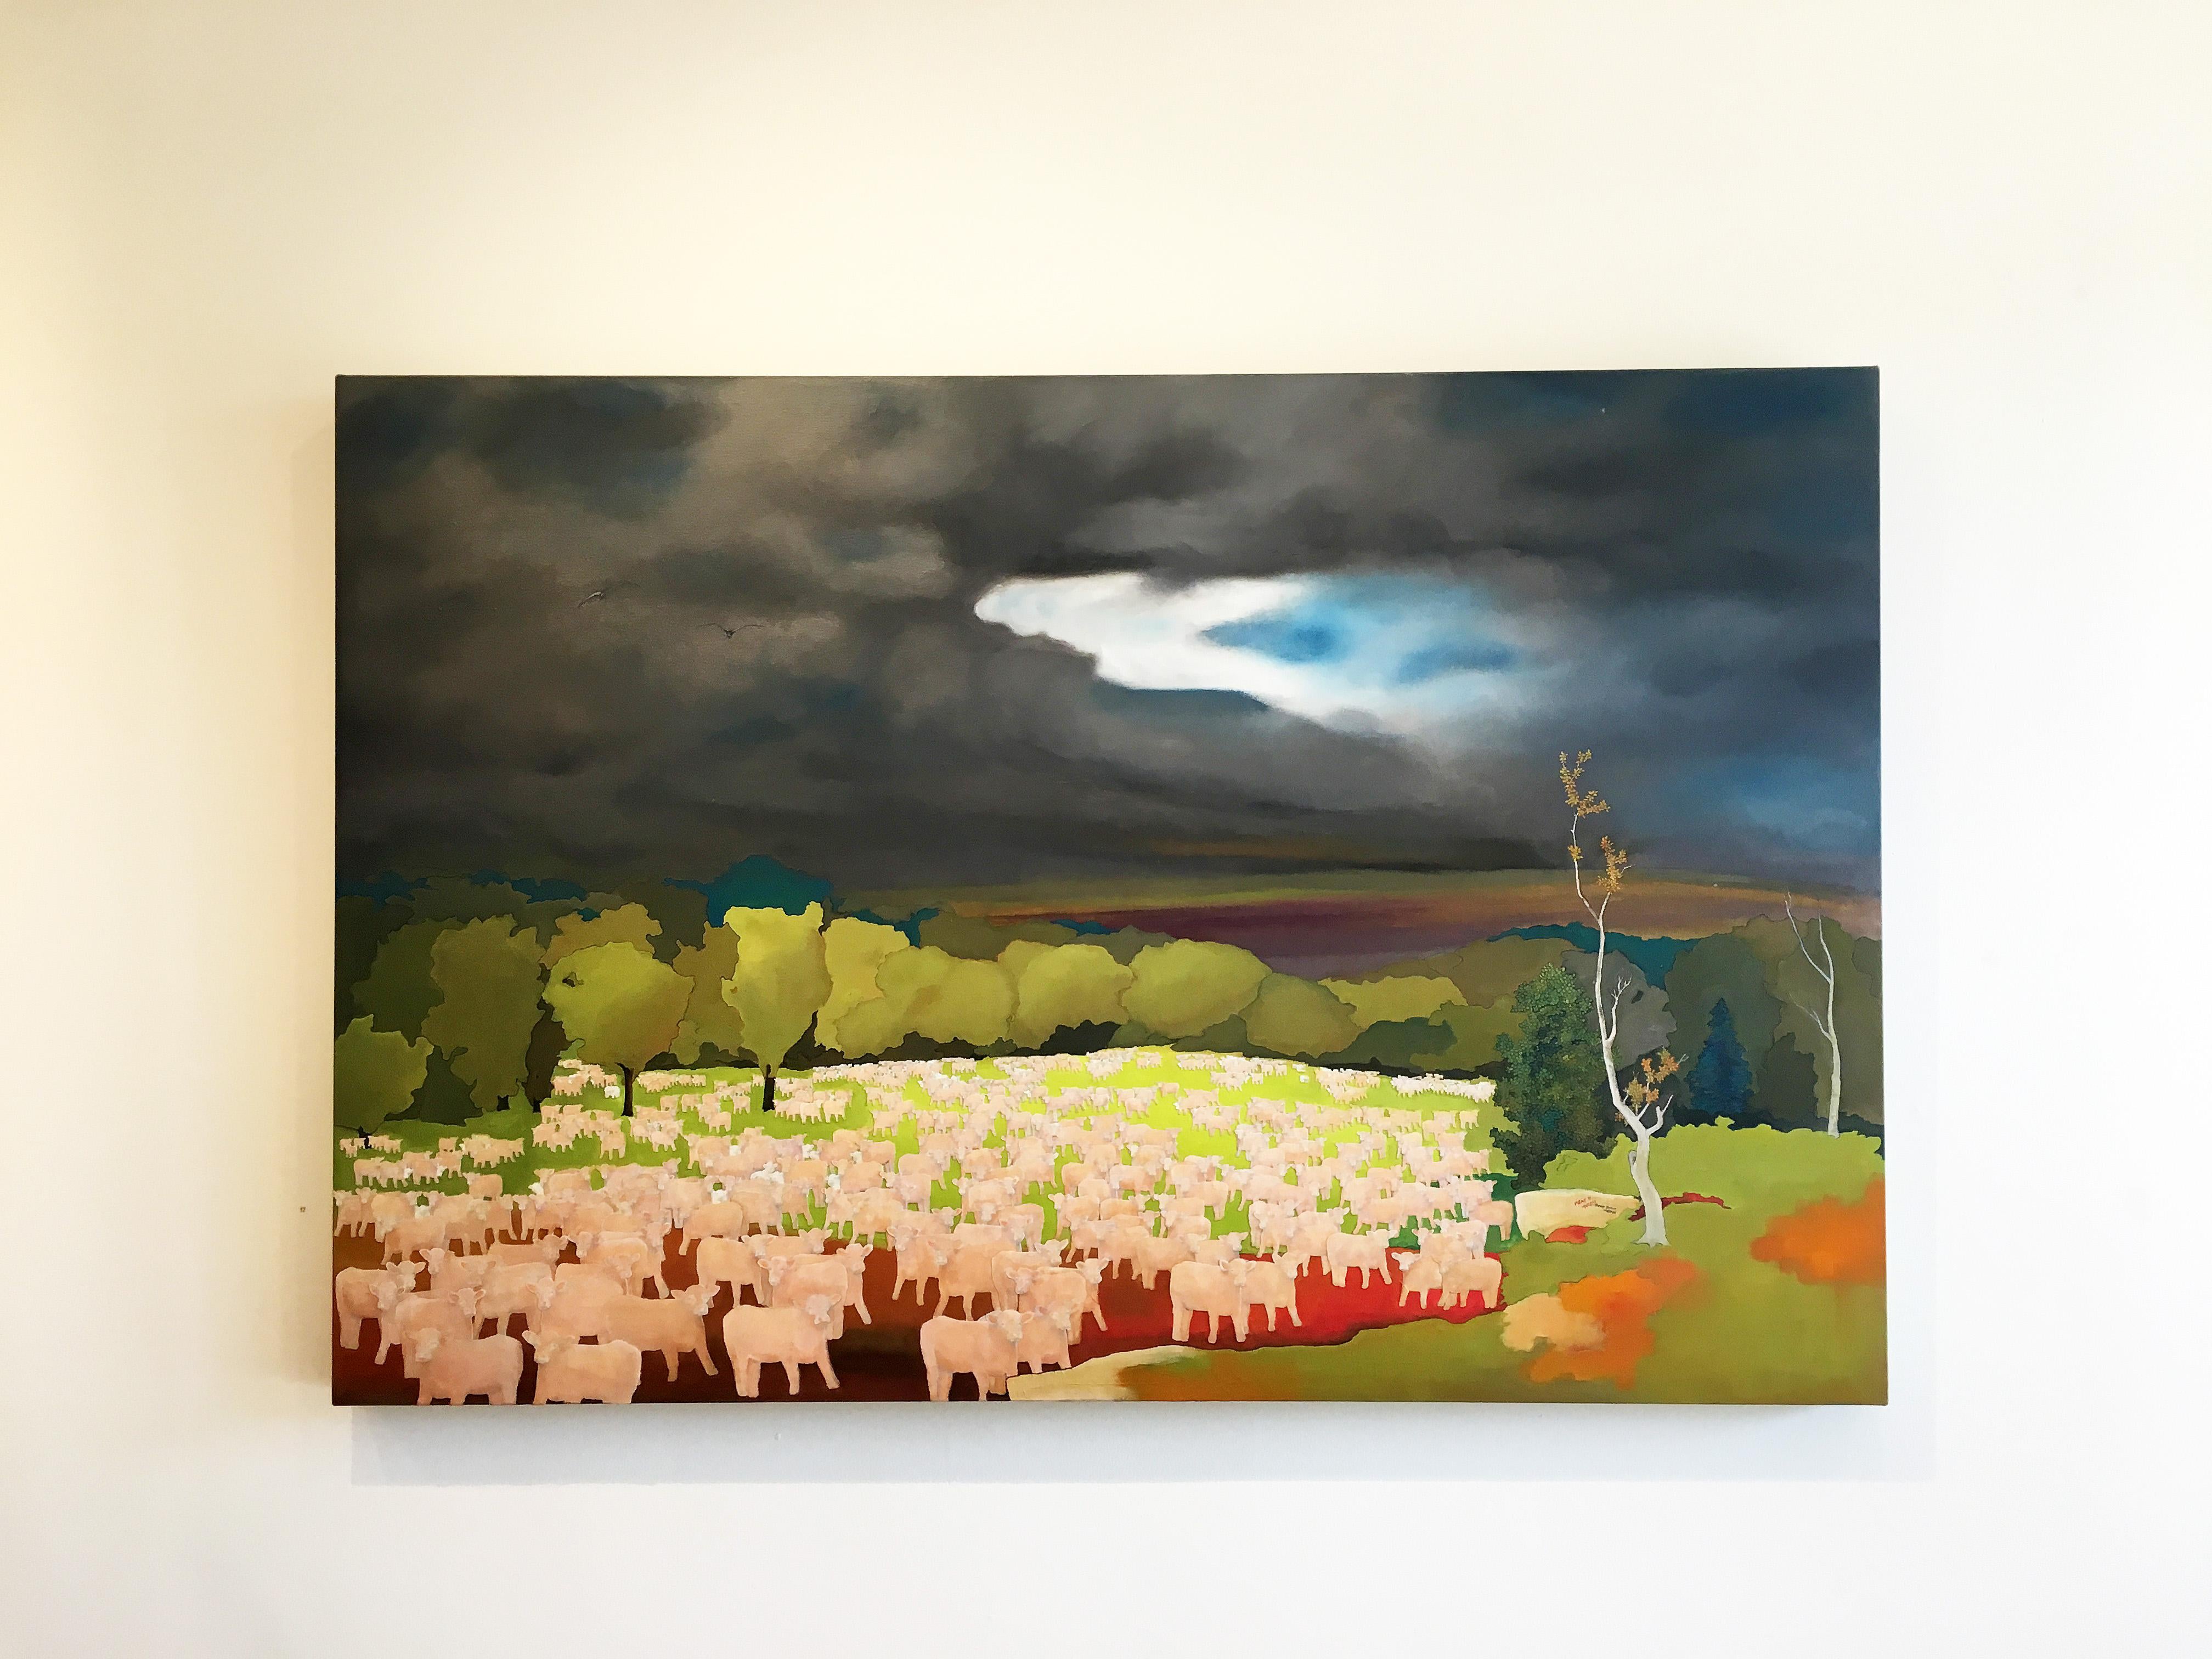 Der kommende Sturm – Painting von Purdy Eaton